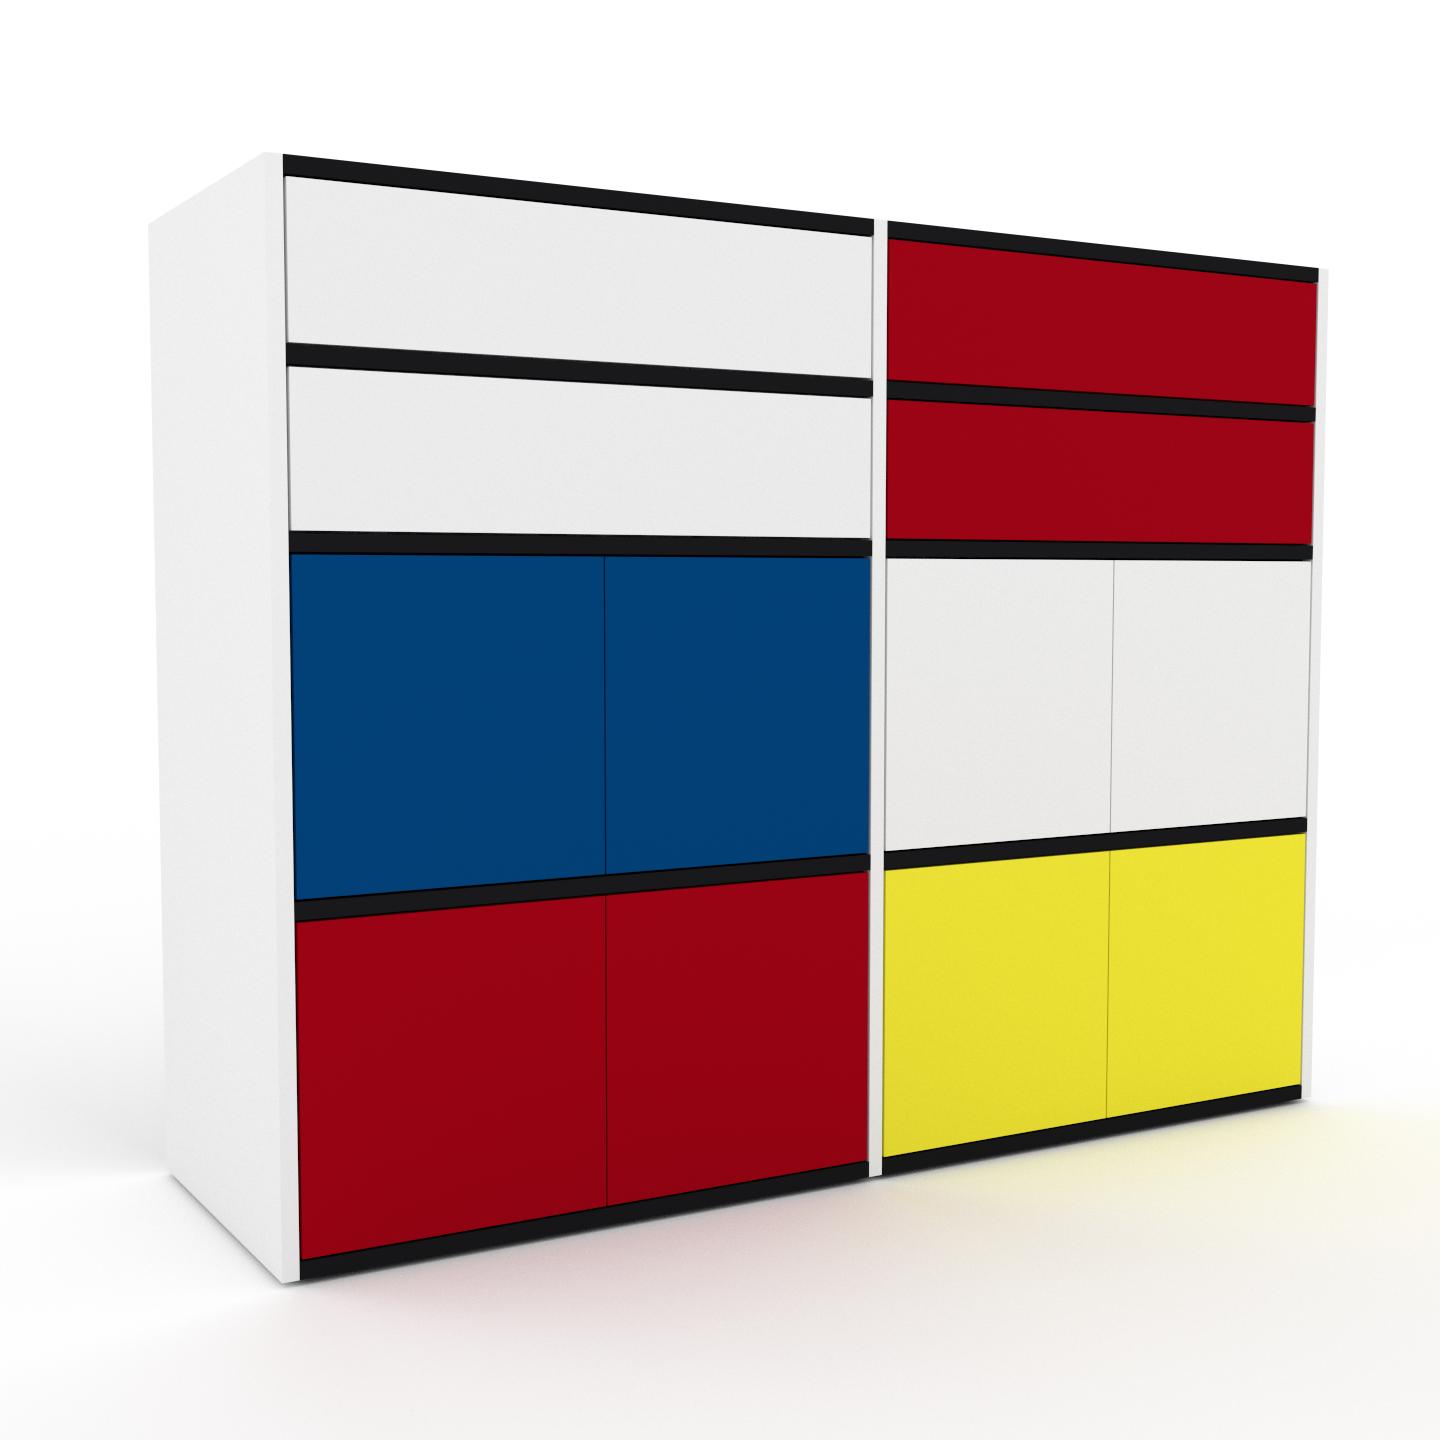 MYCS Holzregal Weiß - Modernes Regal aus Holz: Schubladen in Weiß & Türen in Rot - 152 x 118 x 47 cm, Personalisierbar